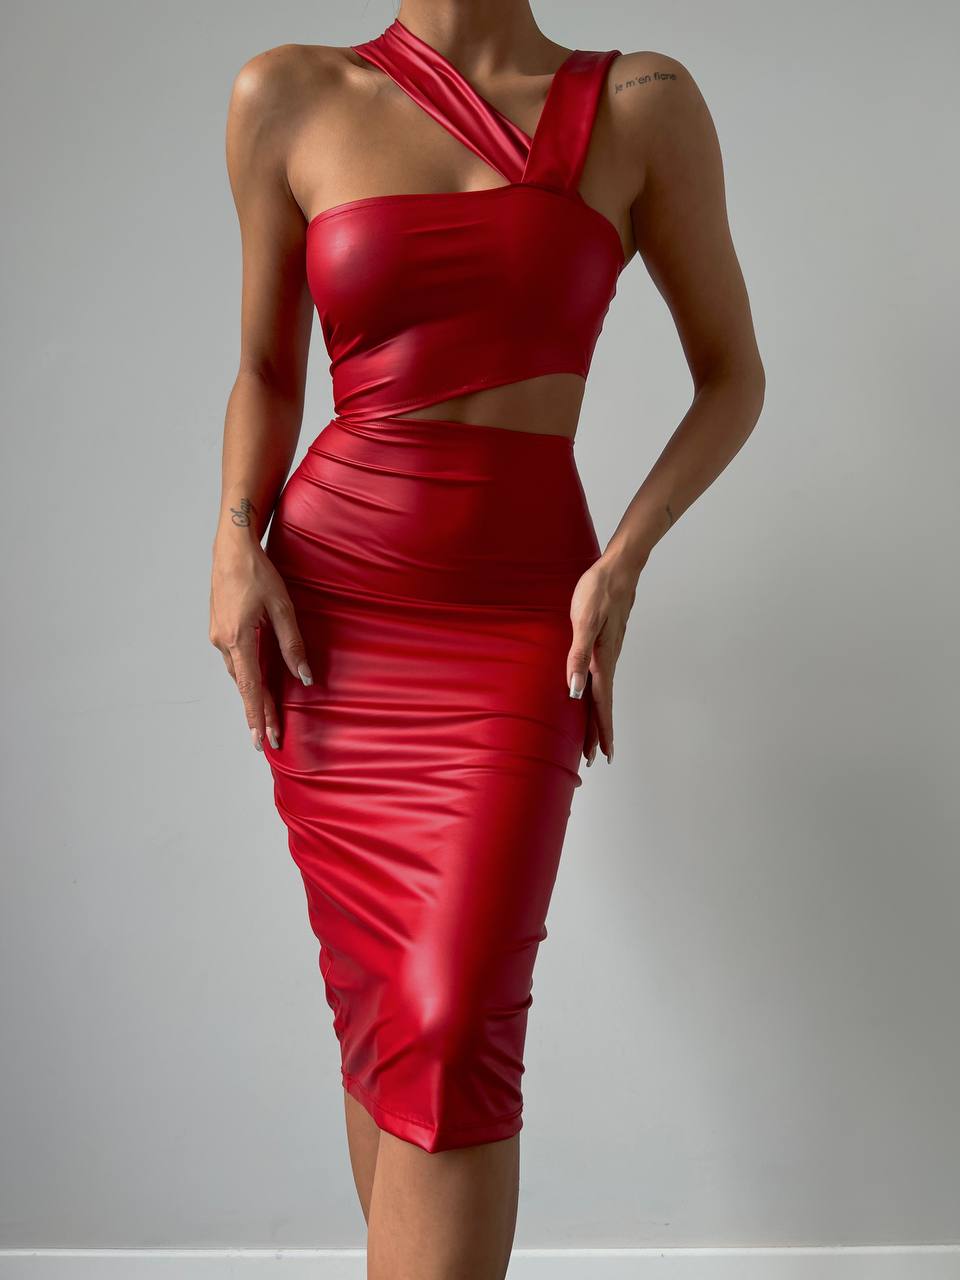 Дамска рокля MARINA RED  https://bvseductive.com/products/womans-s-dresses-marina-red  елегантна, миди рокля в червен цвят в изчистен дизайн и кройка, подчертаваща силуета модел с красиво деколте стилно предложение, с което ще направите впечатление